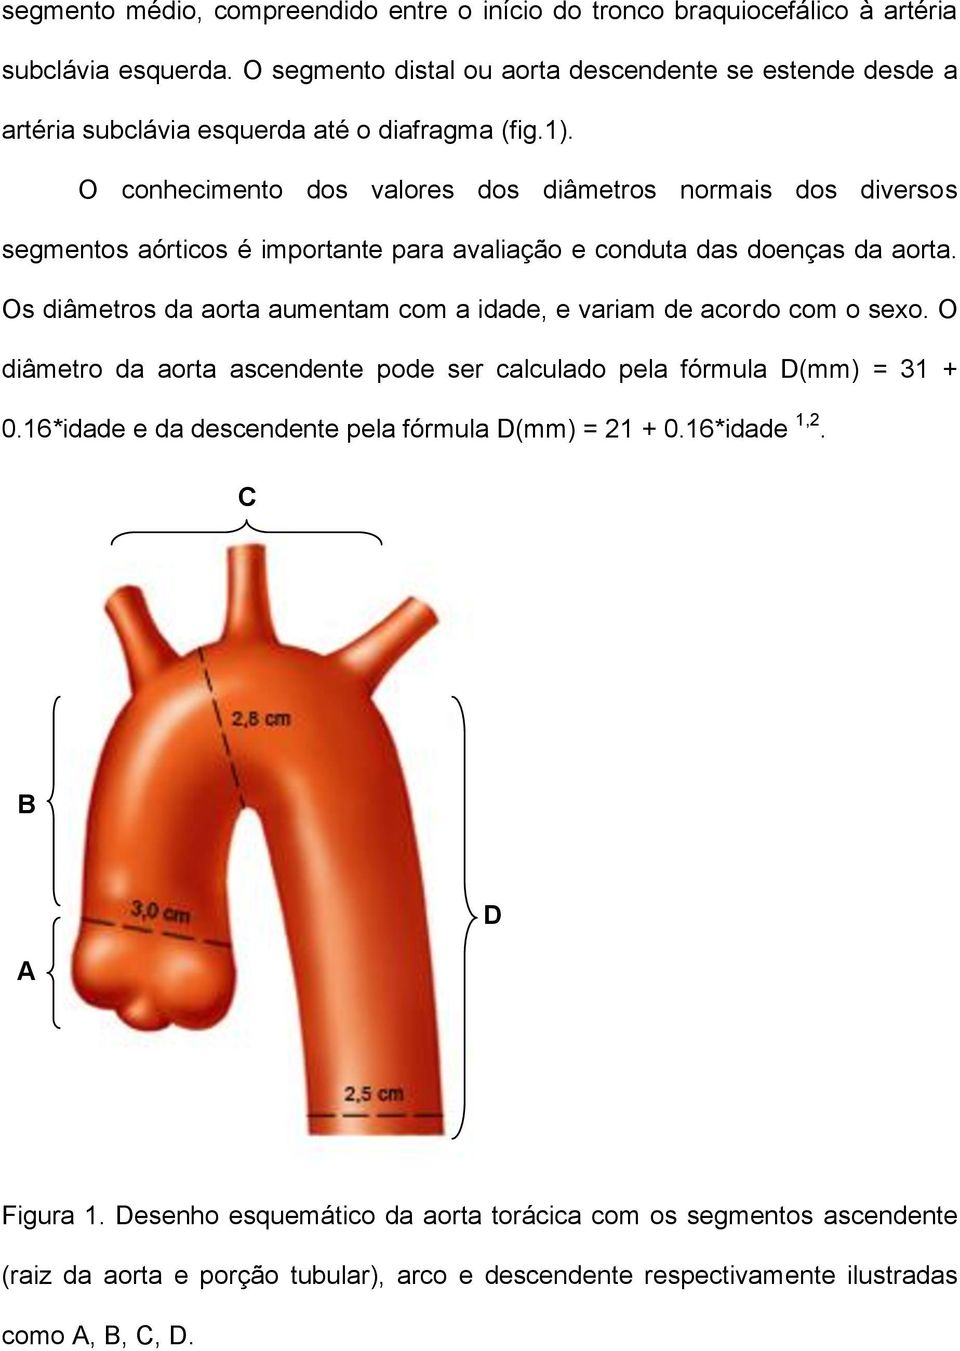 O conhecimento dos valores dos diâmetros normais dos diversos segmentos aórticos é importante para avaliação e conduta das doenças da aorta.